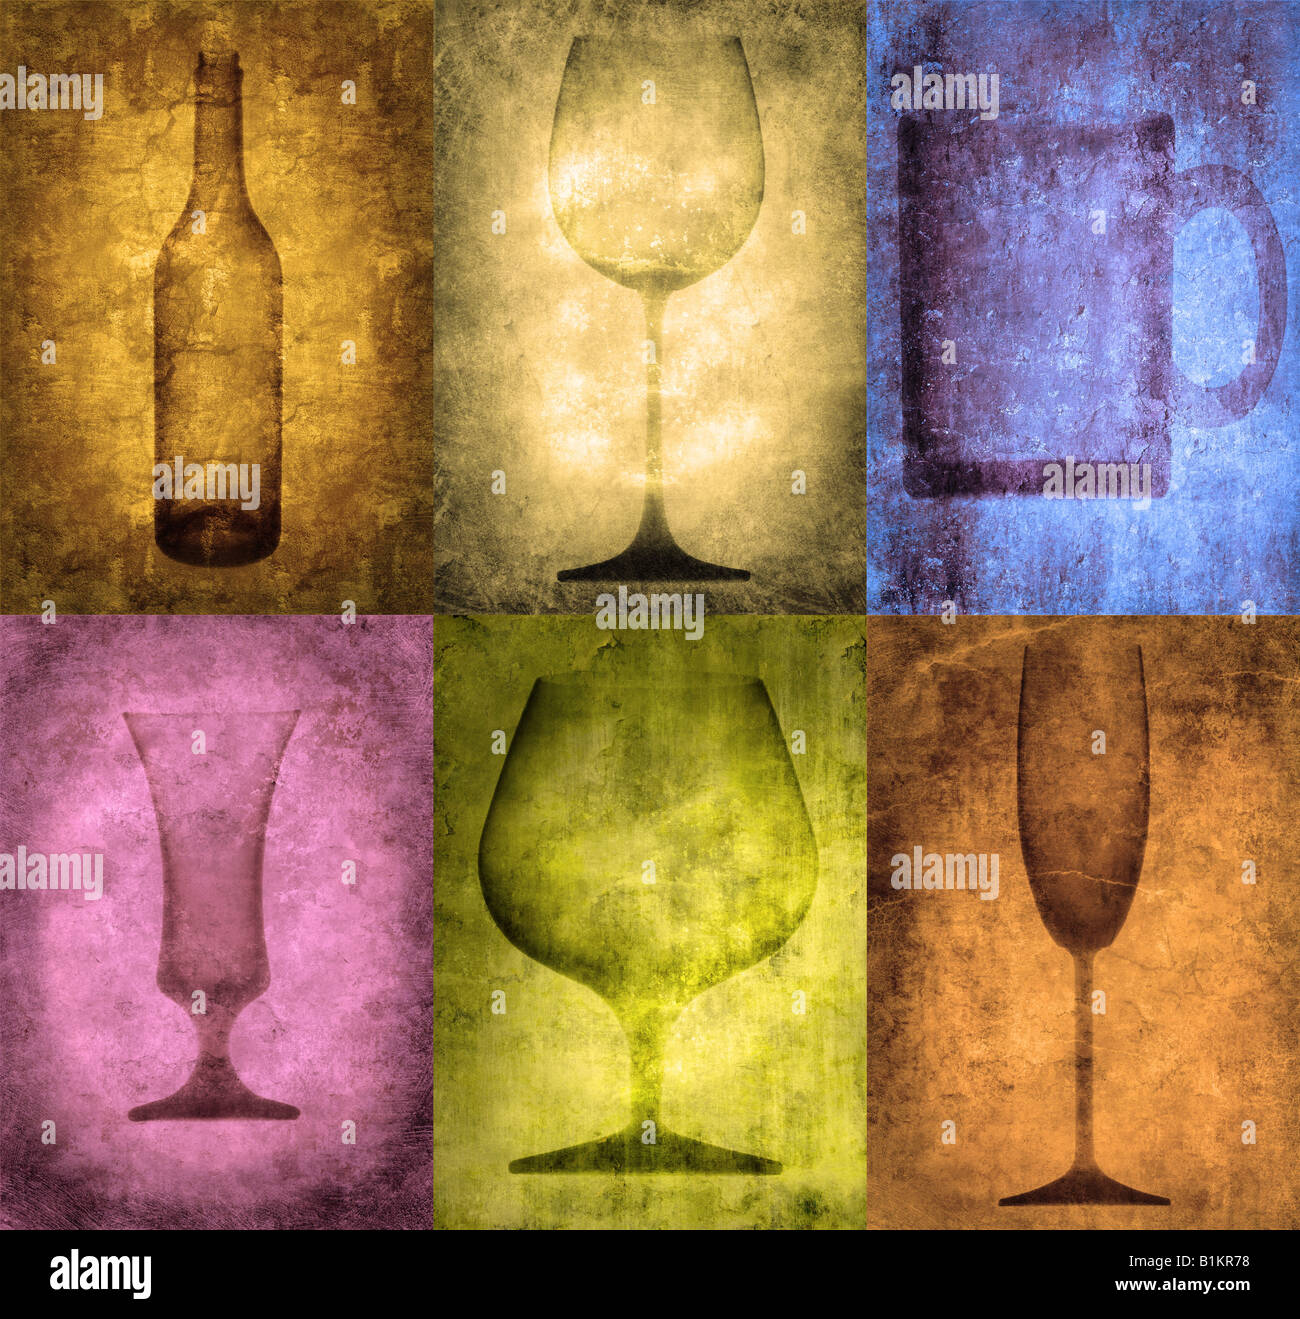 Grunge illustrazione con bottiglia e bicchieri, vintage stilizzata Foto Stock